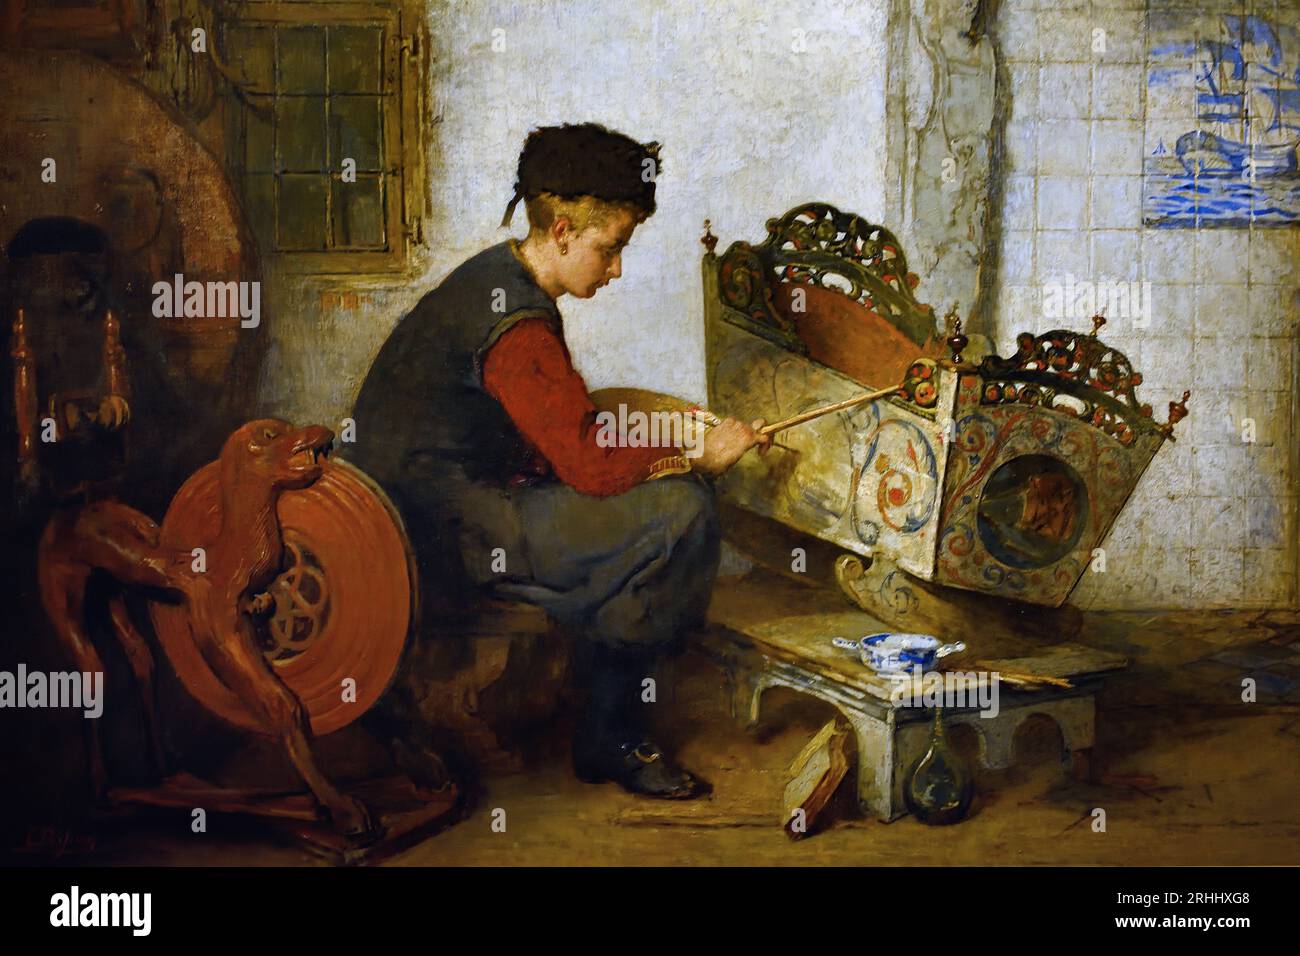 Garçon peignant un berceau 1899-1901 Hindeloopen, Frise. Christoffel Bisschop (1828-1904) artiste frison (épouse anglaise Kate Bisschop-Swift) (1834-1928). Néerlandais, pays-Bas, Banque D'Images